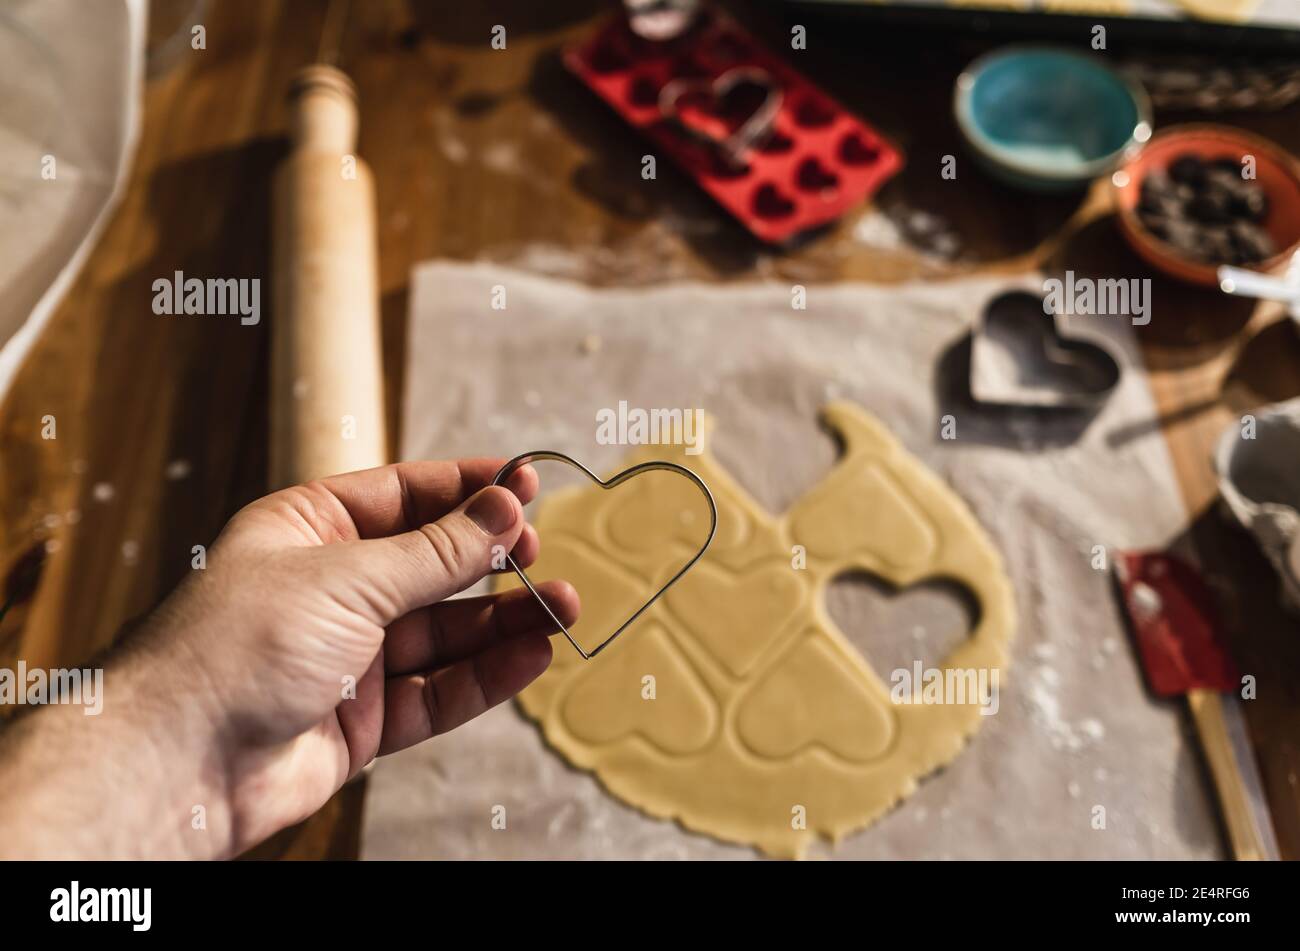 Mann hält Eisenkuchen-Kuchenform mit Herz in der Hand. Rohe Teigkekse auf dem Tisch machen. Stockfoto